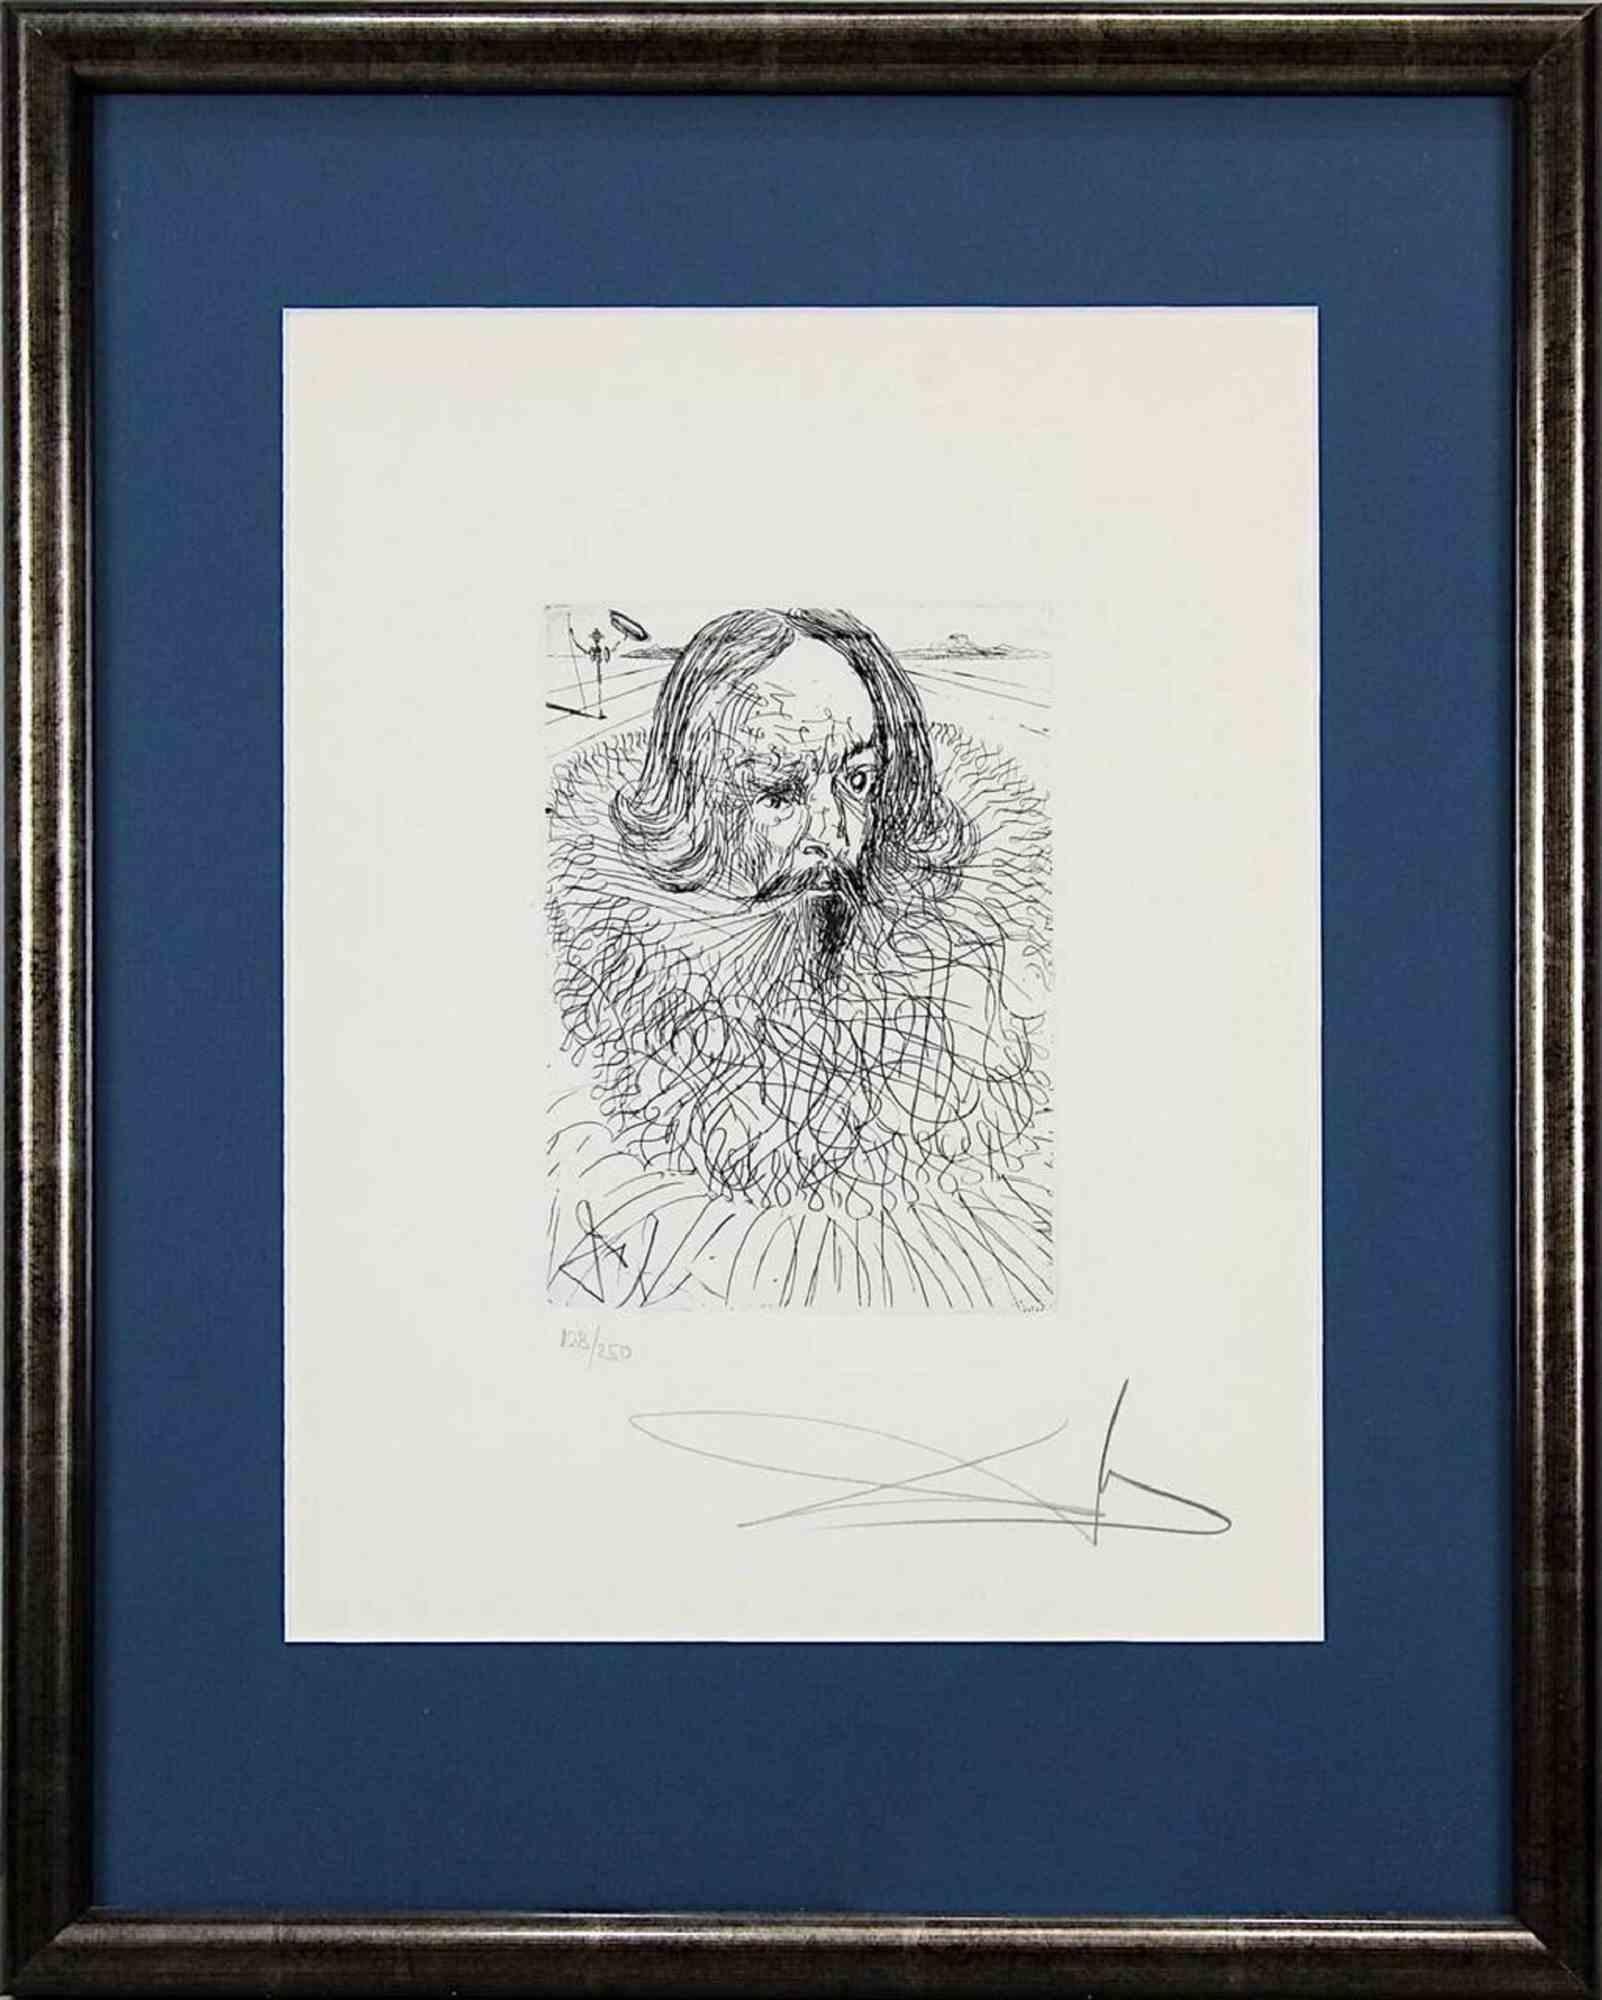 Cervantes - Original Etching attr. to Salvador Dalì - 1966 - Print by Salvador Dalí